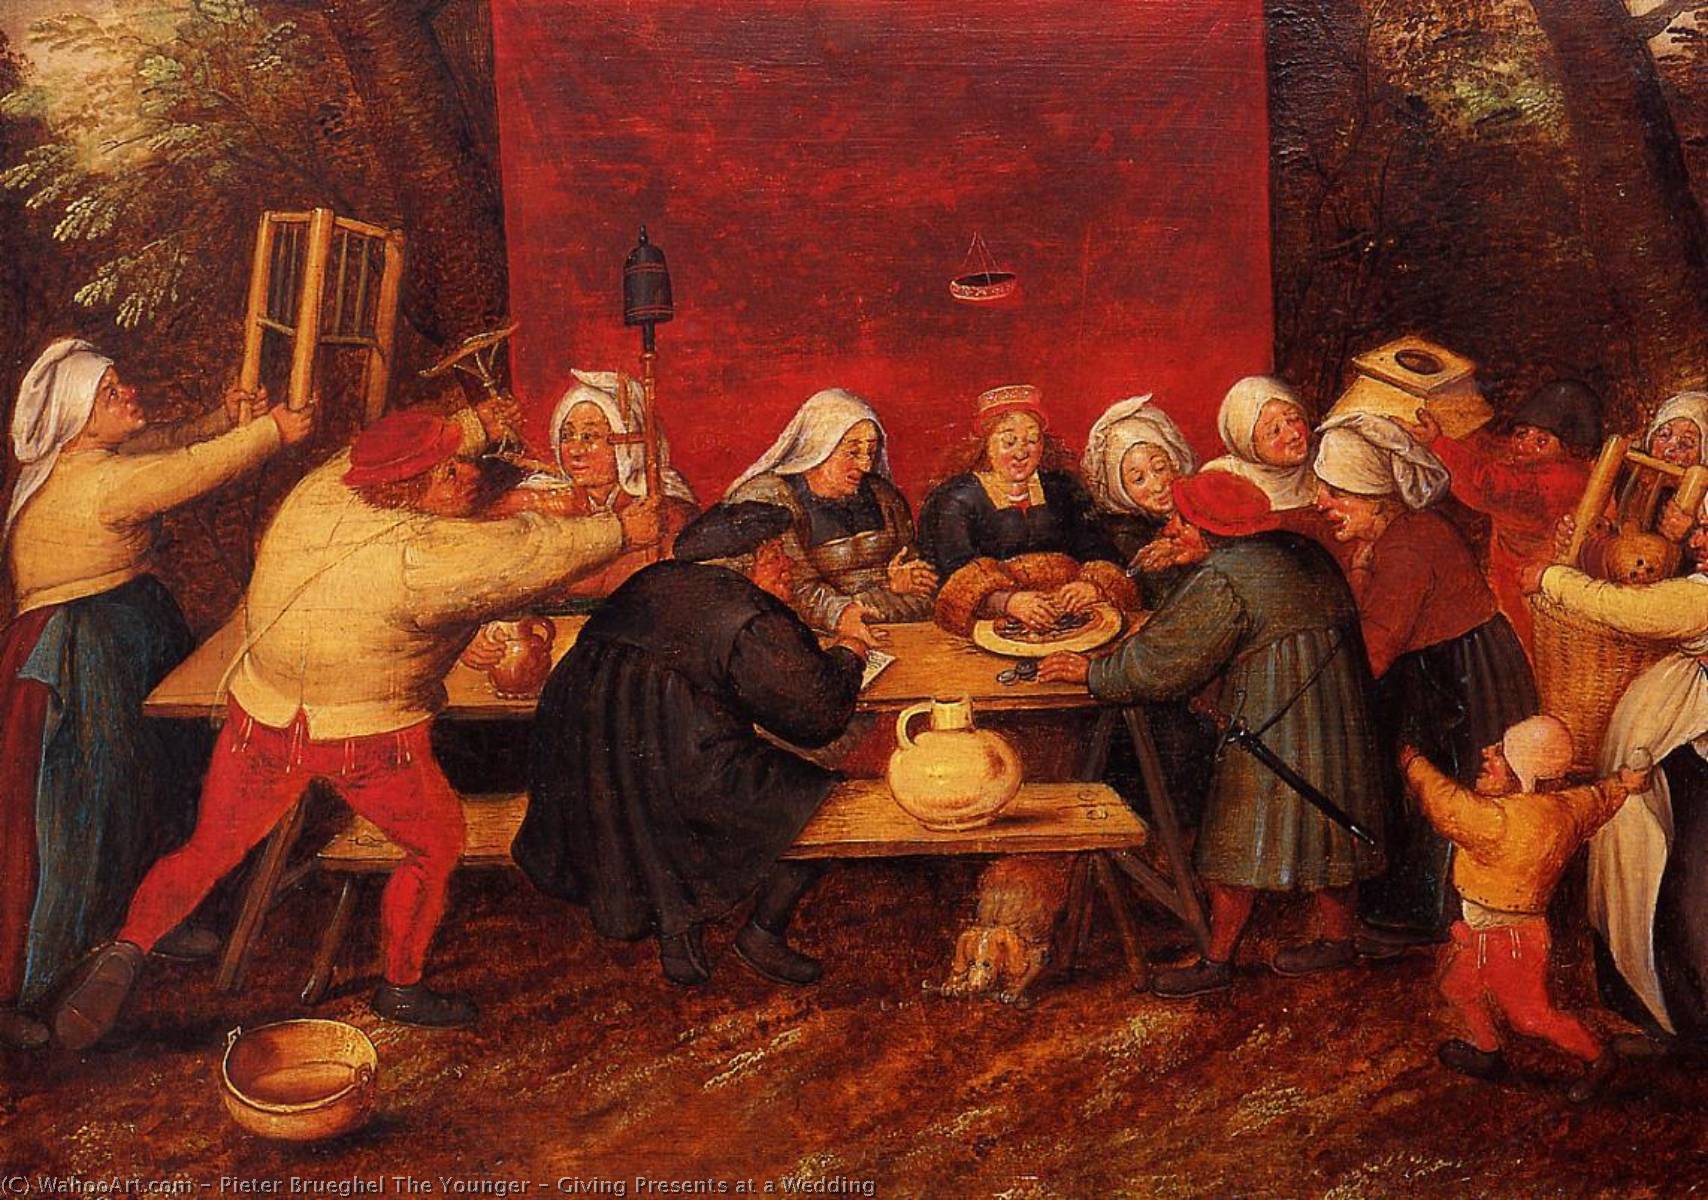 WikiOO.org - אנציקלופדיה לאמנויות יפות - ציור, יצירות אמנות Pieter Brueghel The Younger - Giving Presents at a Wedding